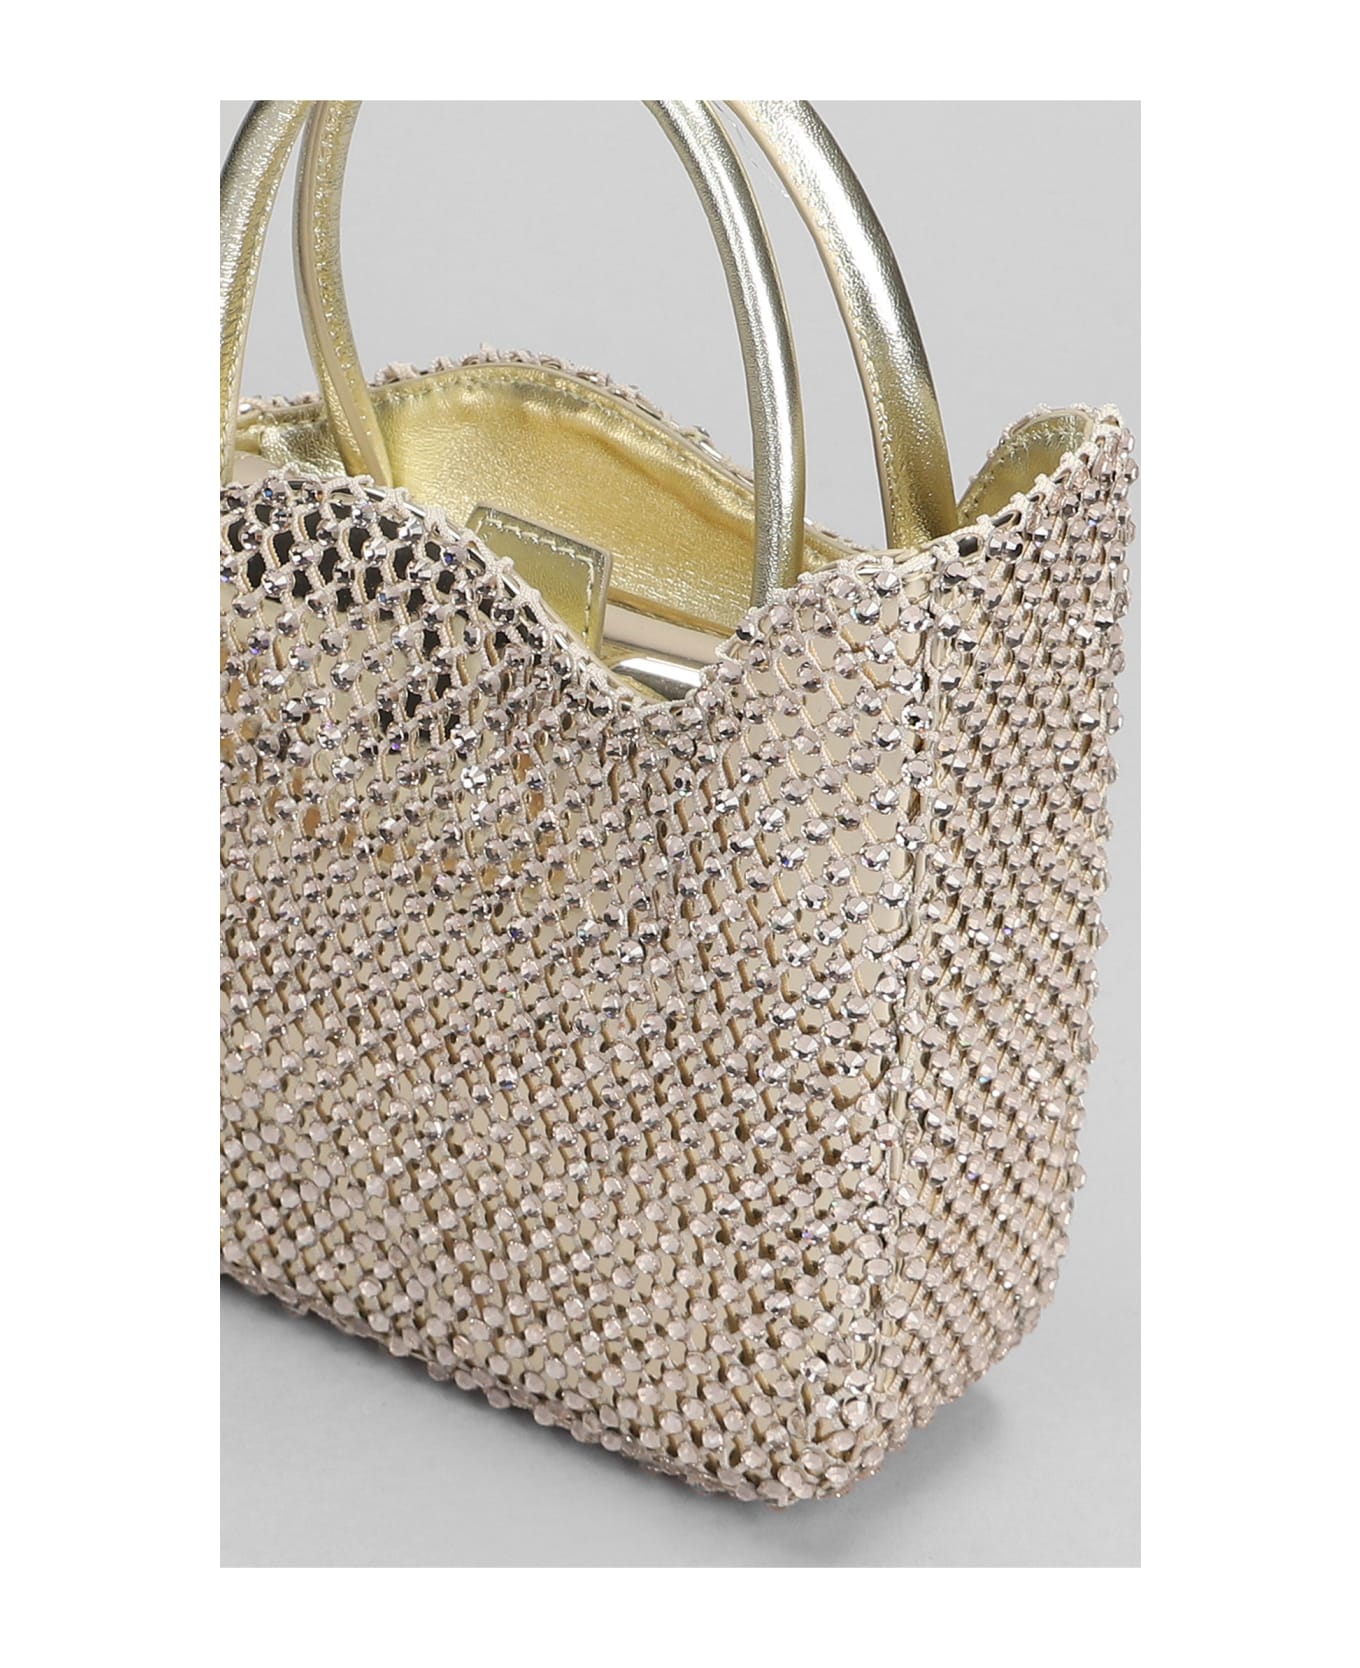 Le Silla Gilda Hand Bag In Platinum Leather - platinum